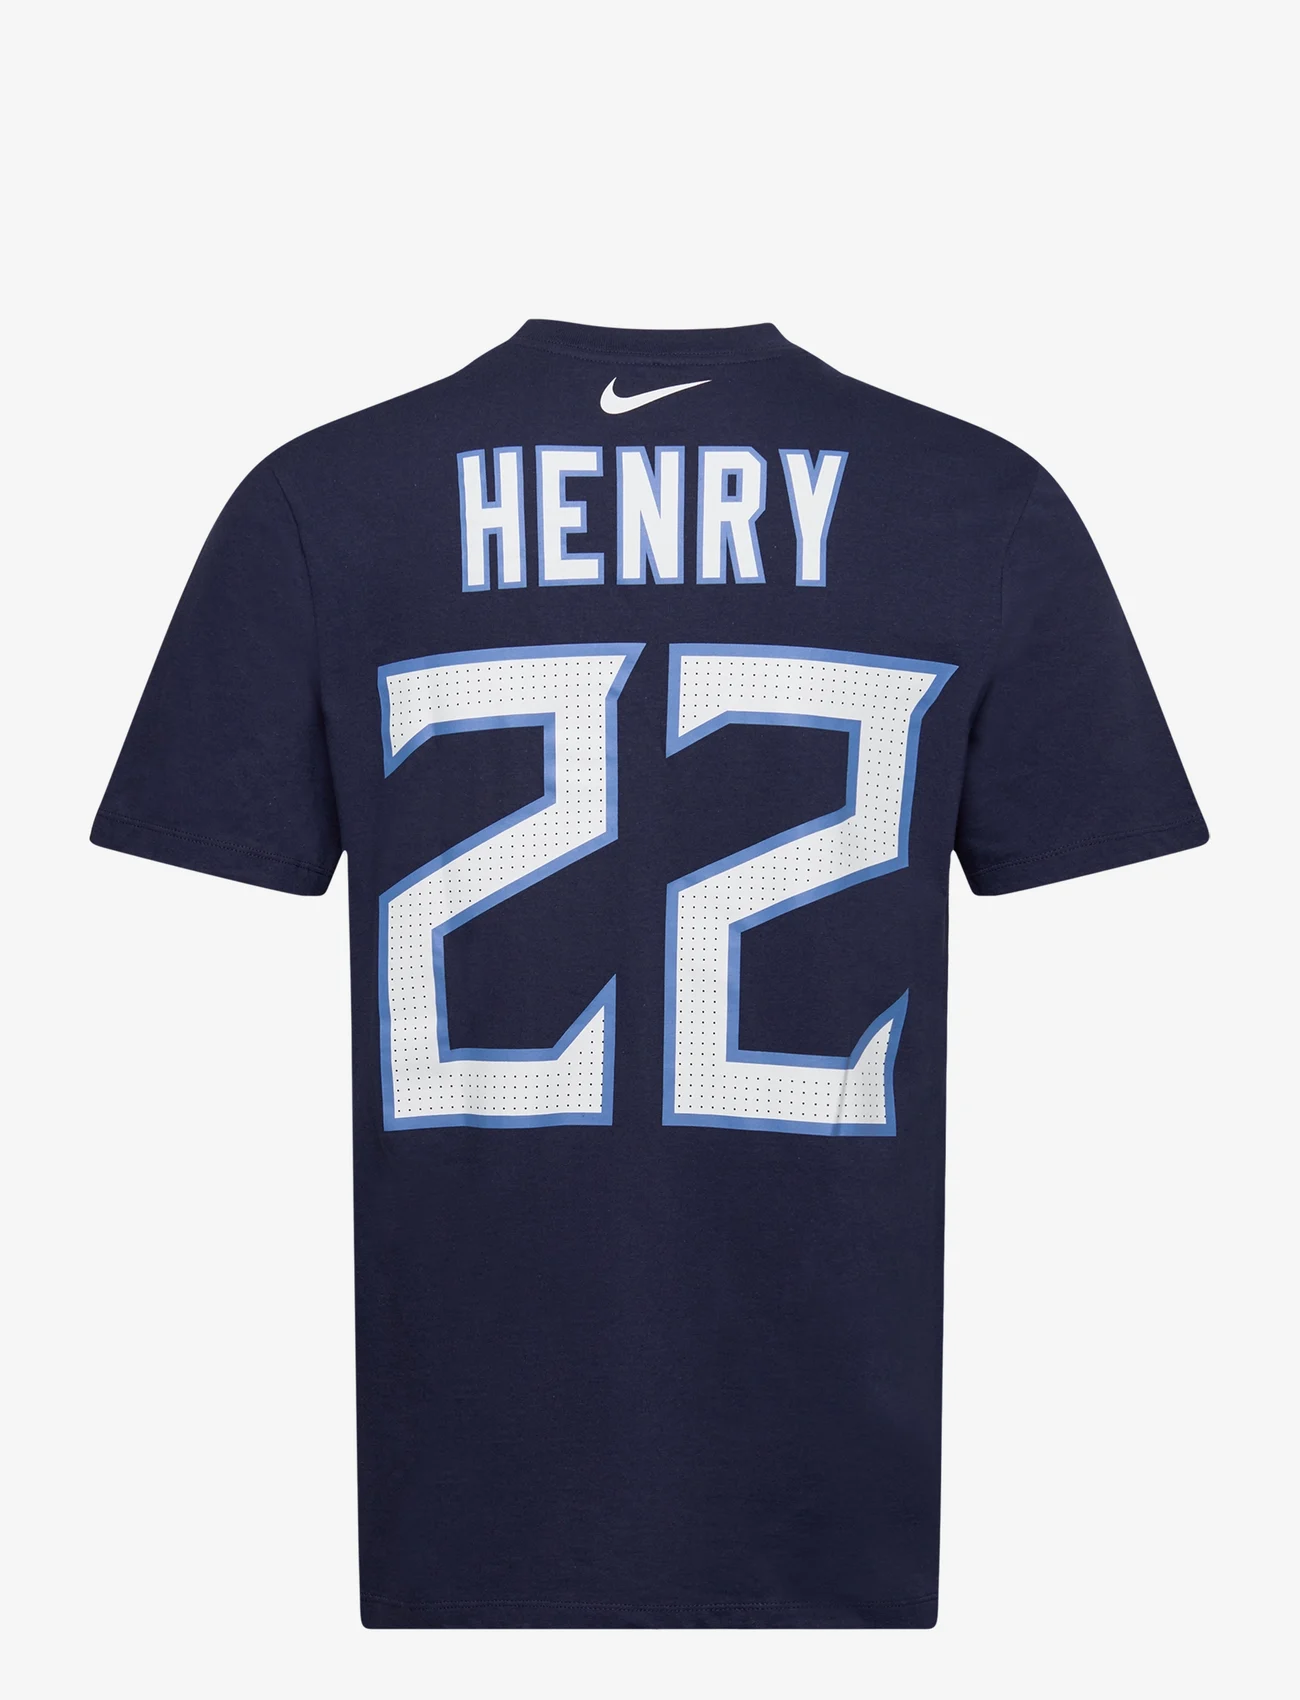 NIKE Fan Gear - Nike NFL Tennessee Titans T-Shirt Henry no 22 - laagste prijzen - college navy - 1